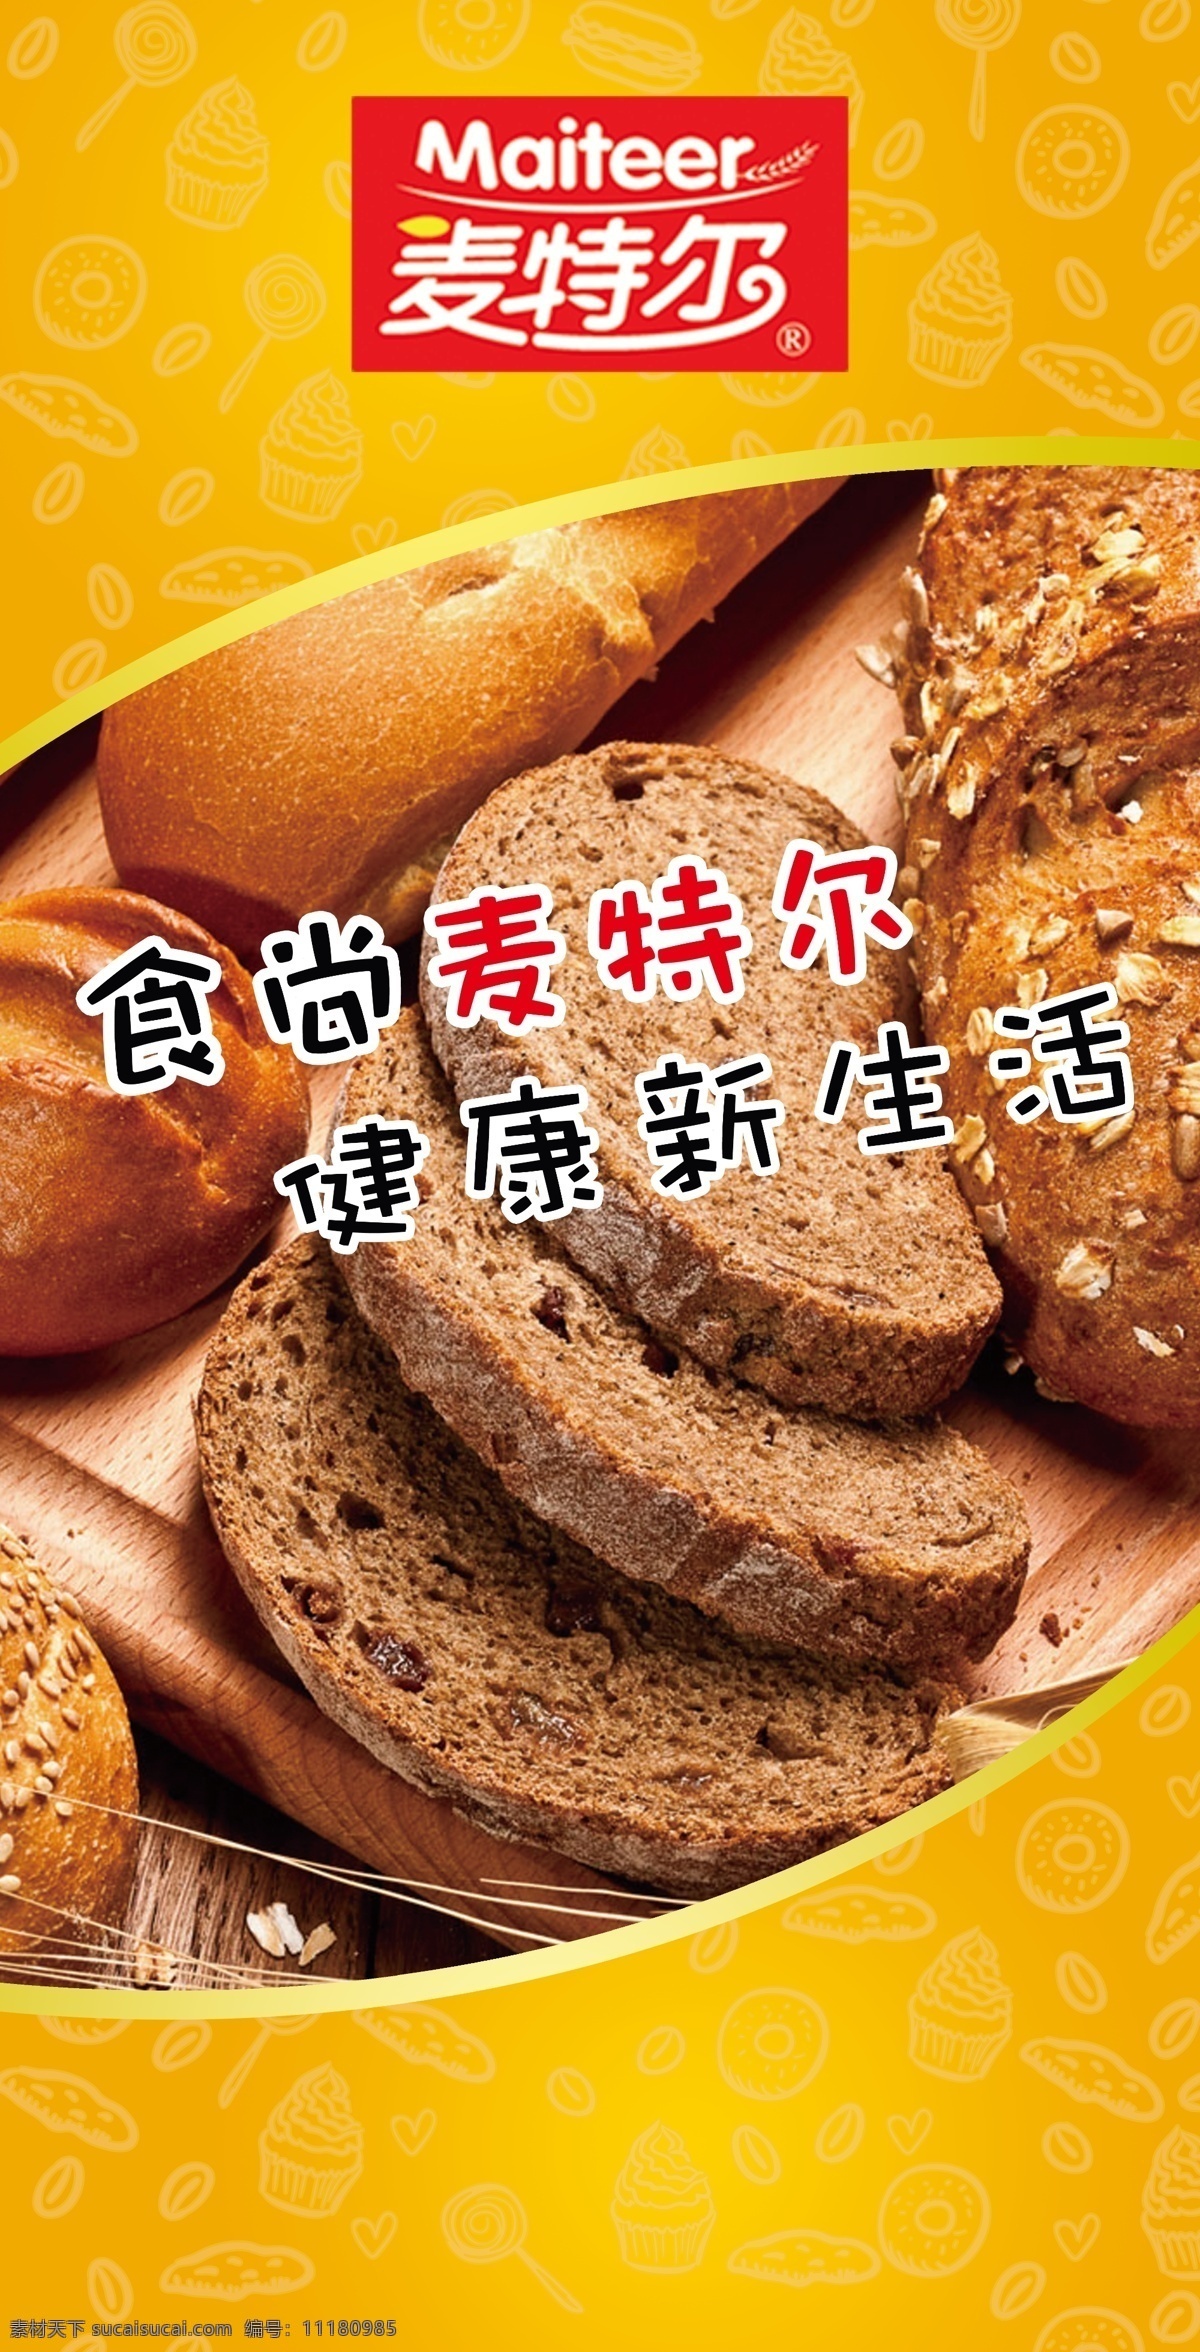 面包宣传 面包简笔 面包 面包底纹 糕点底纹 面包广告